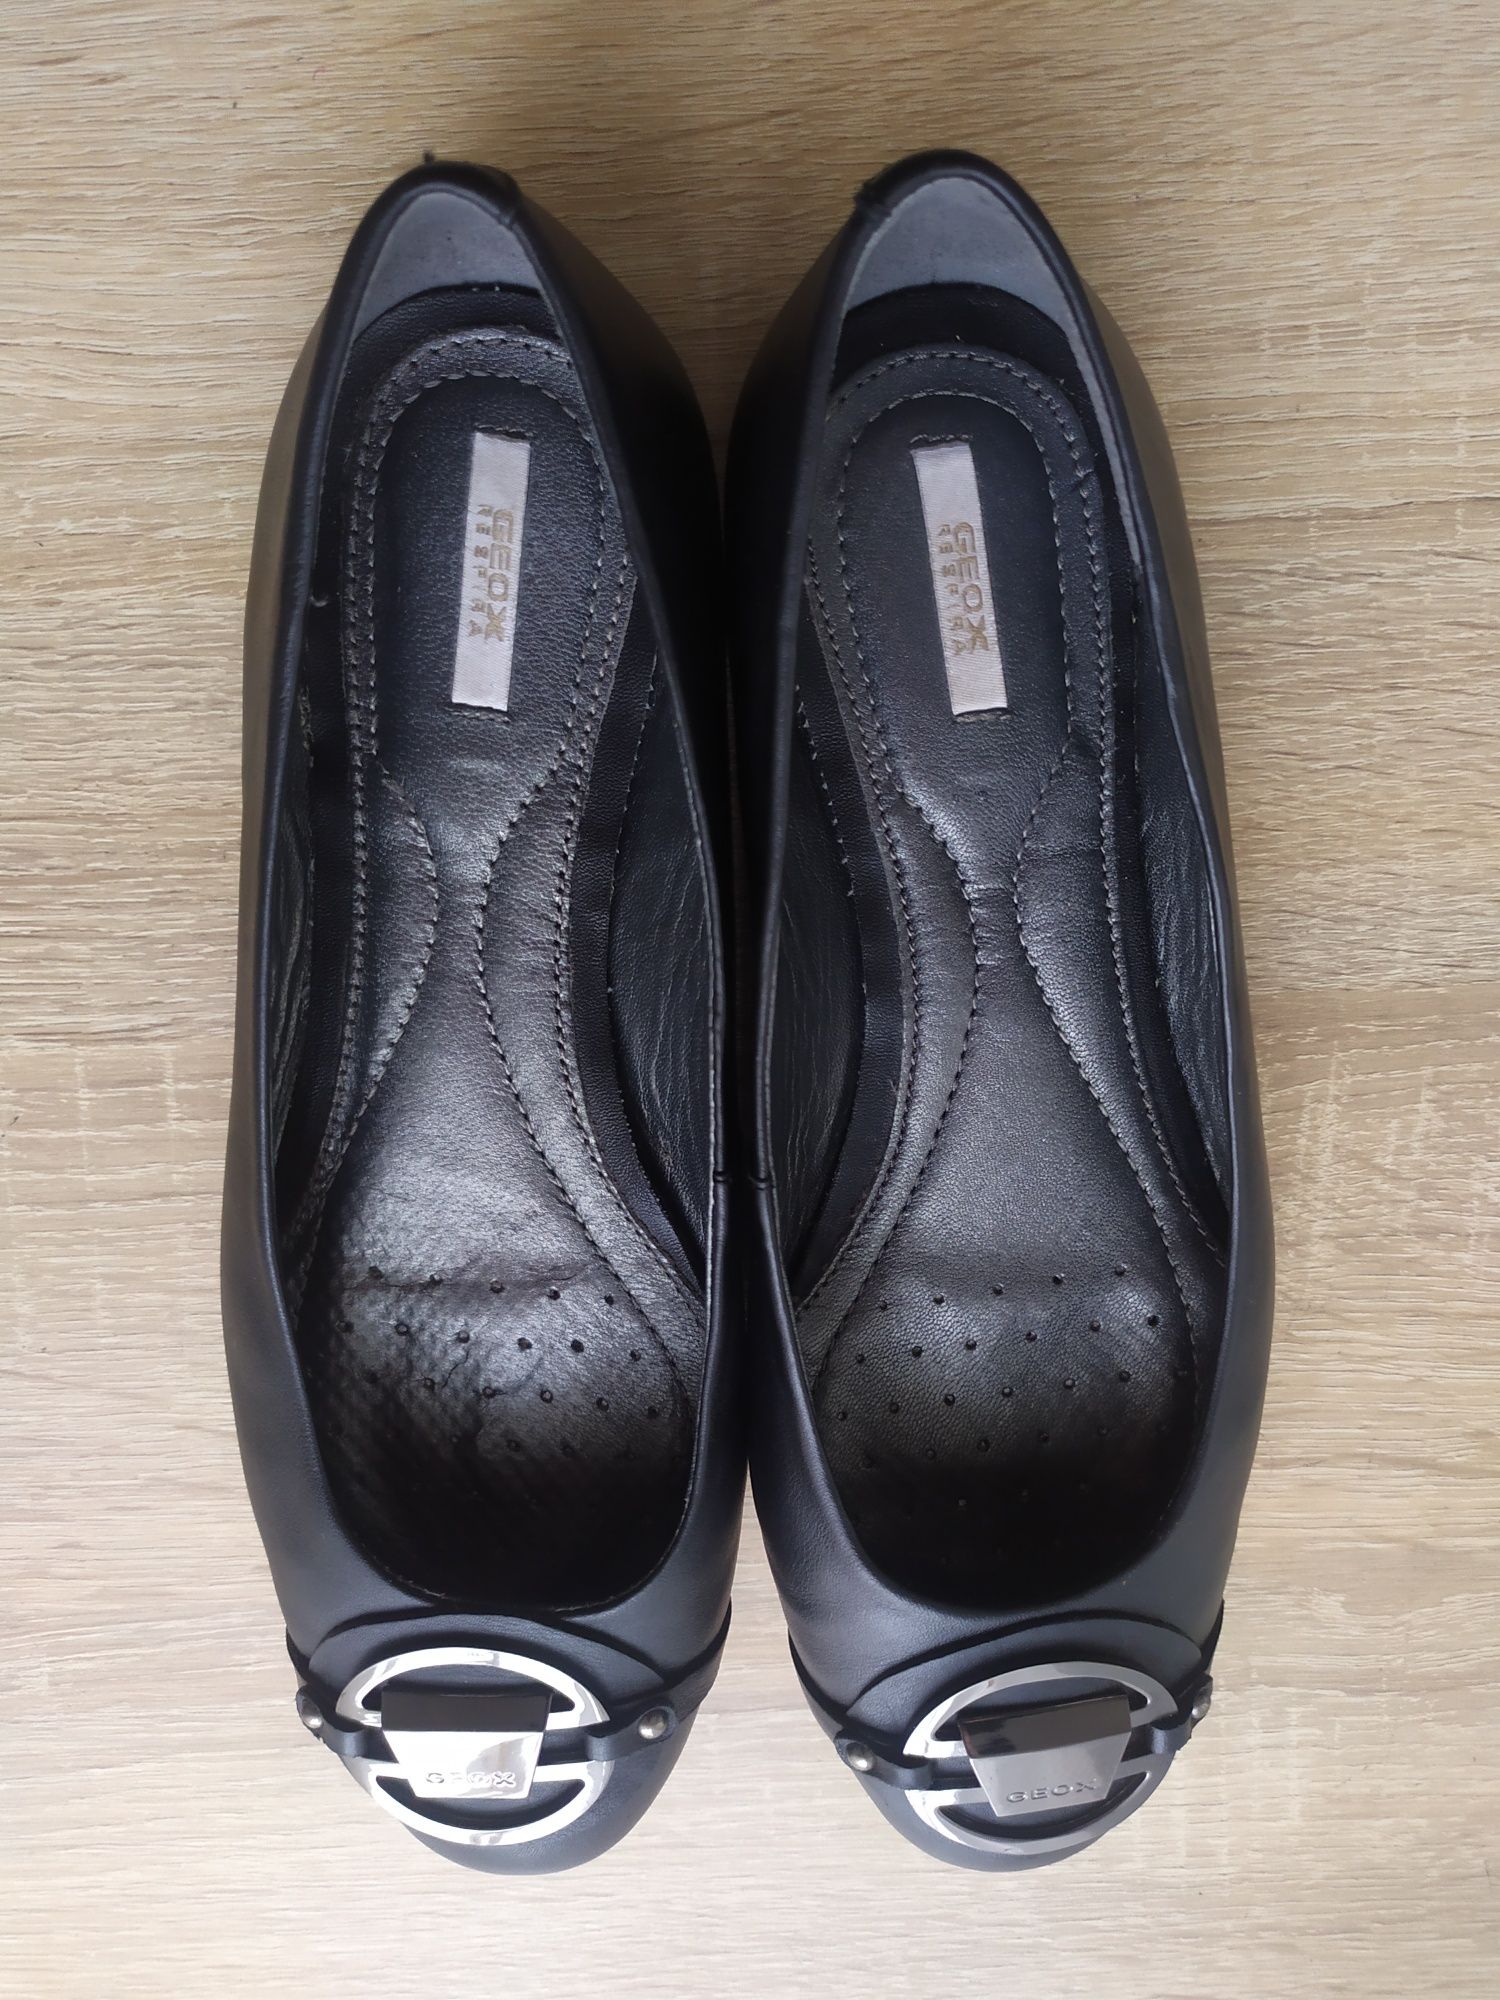 GEOX Respira p.37,5 оригінальні шкіряні балетки туфлі чорного кольору